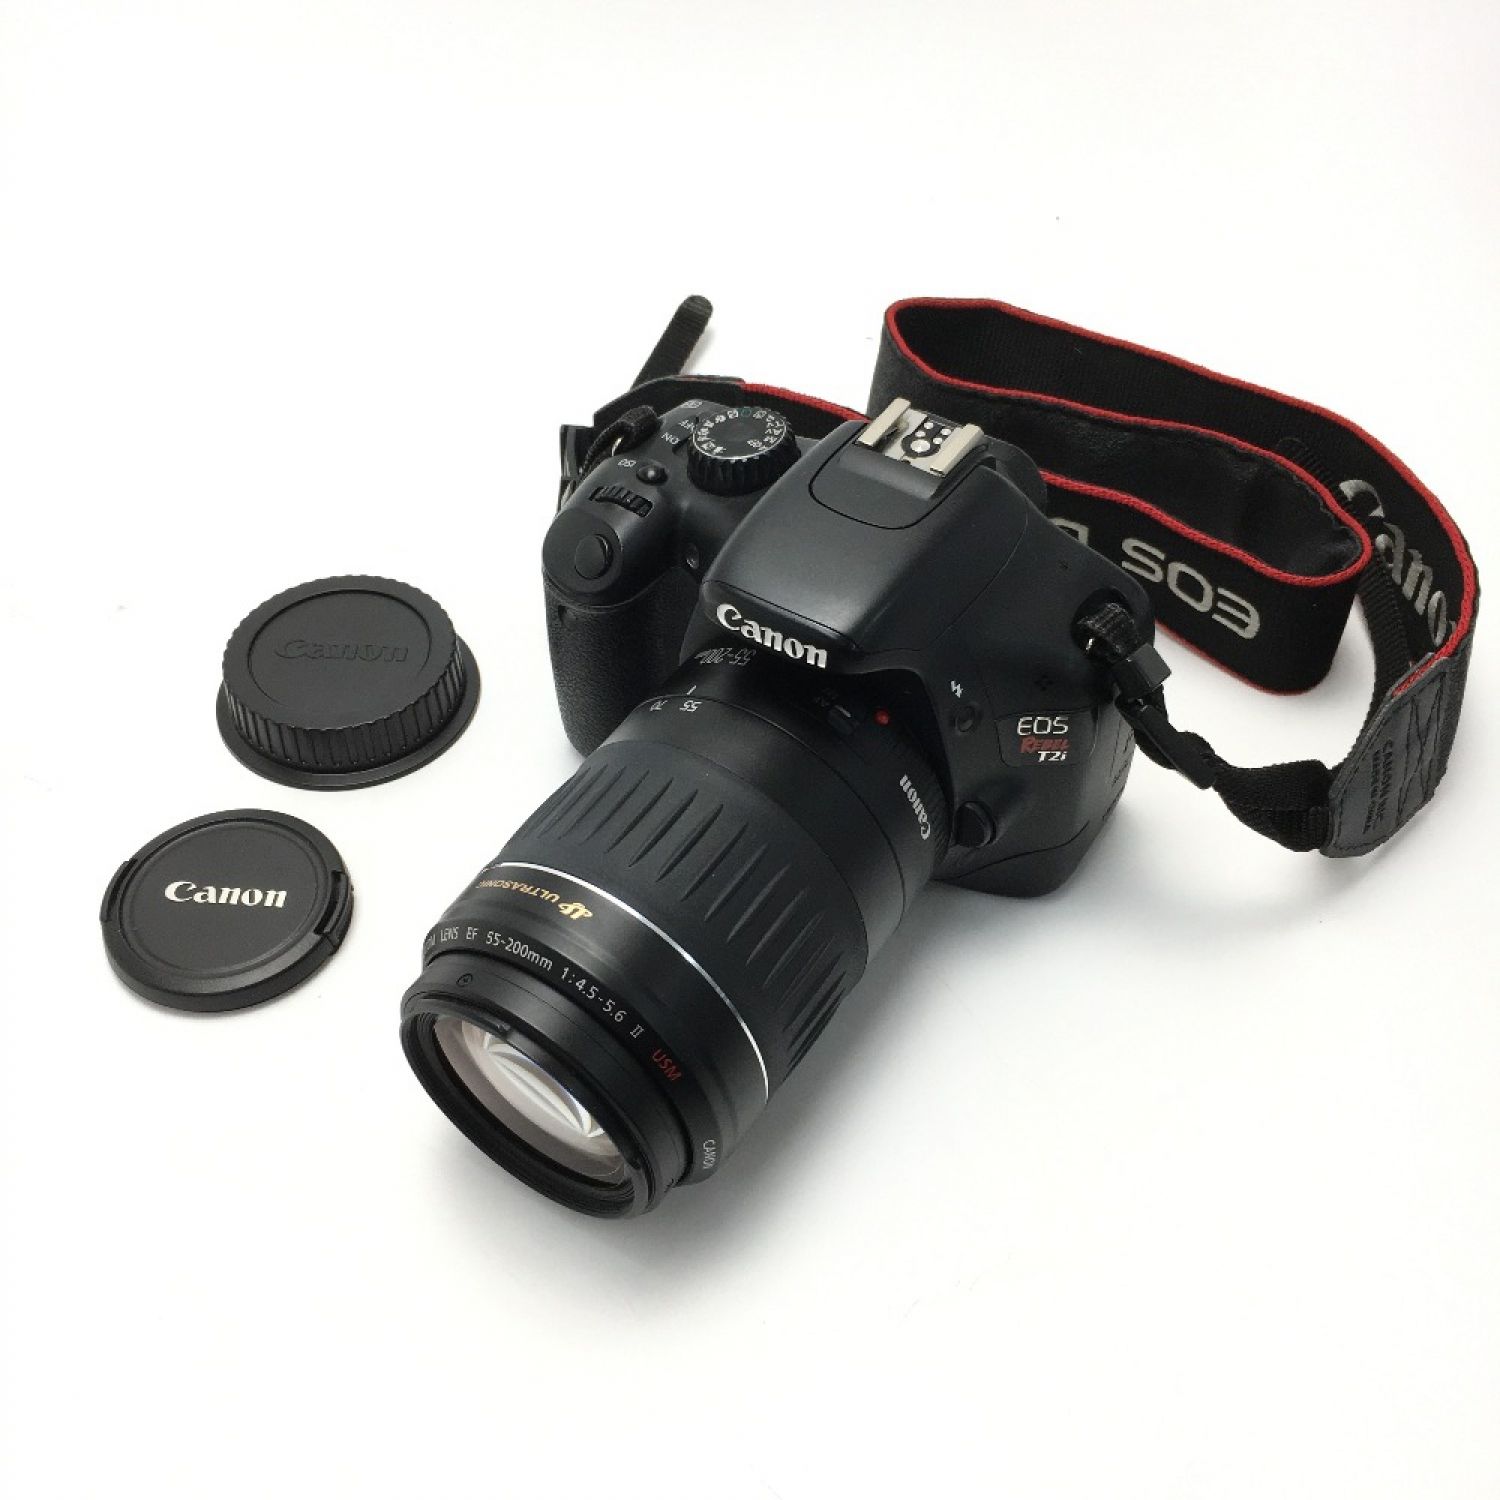 Canon デジタル一眼レフ ボディー EOS rebel T2i レンズキット